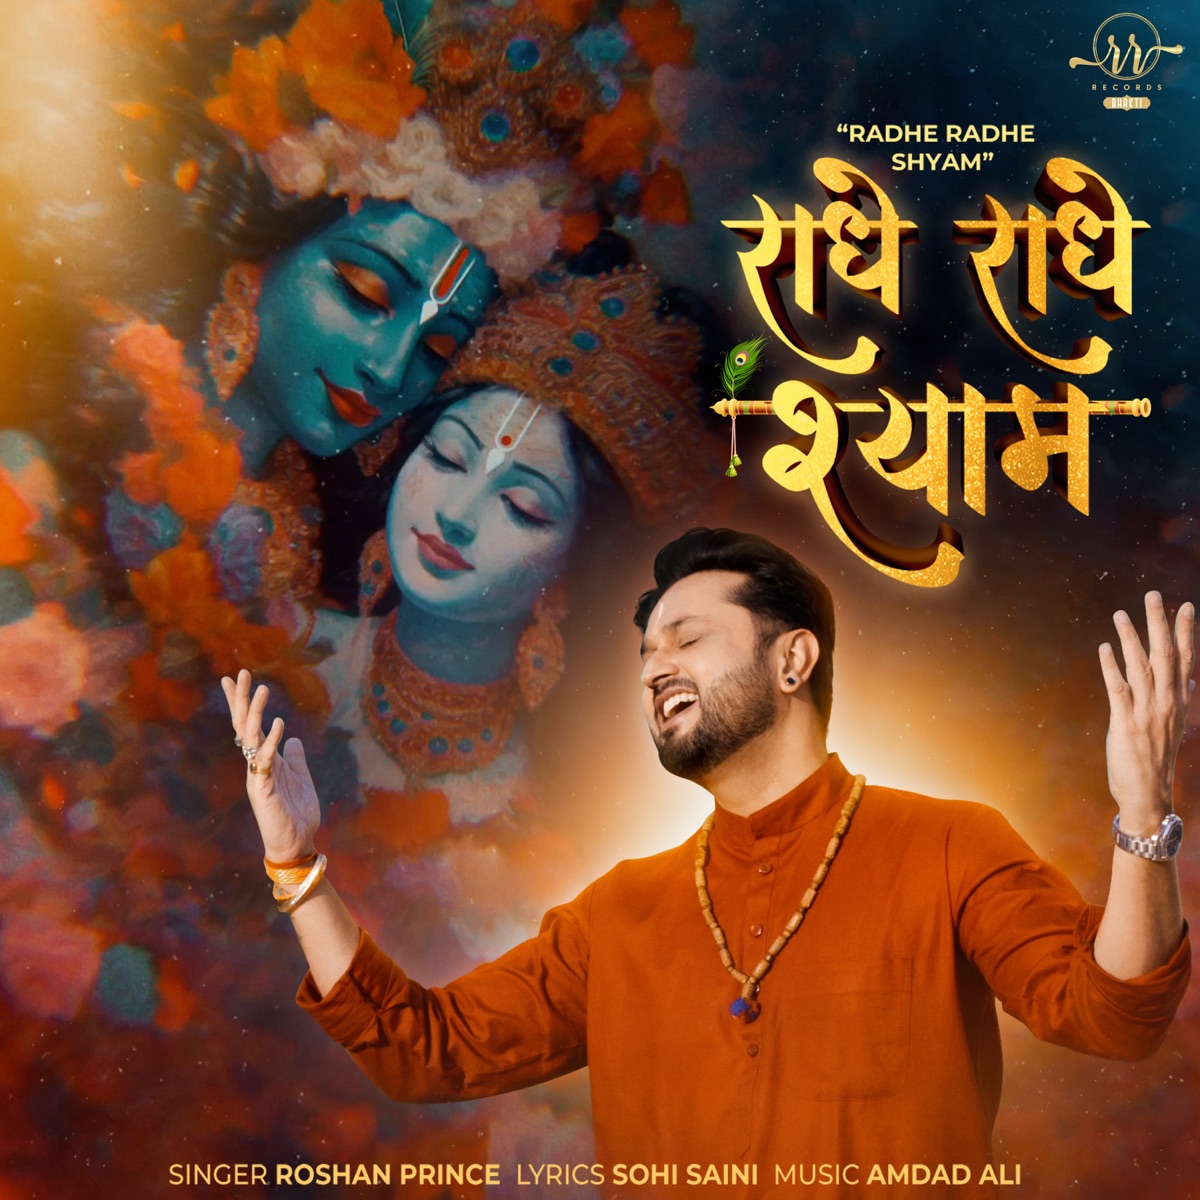 Radhe Radhe Shyam - Single - Album by Roshan Prince - Apple Music